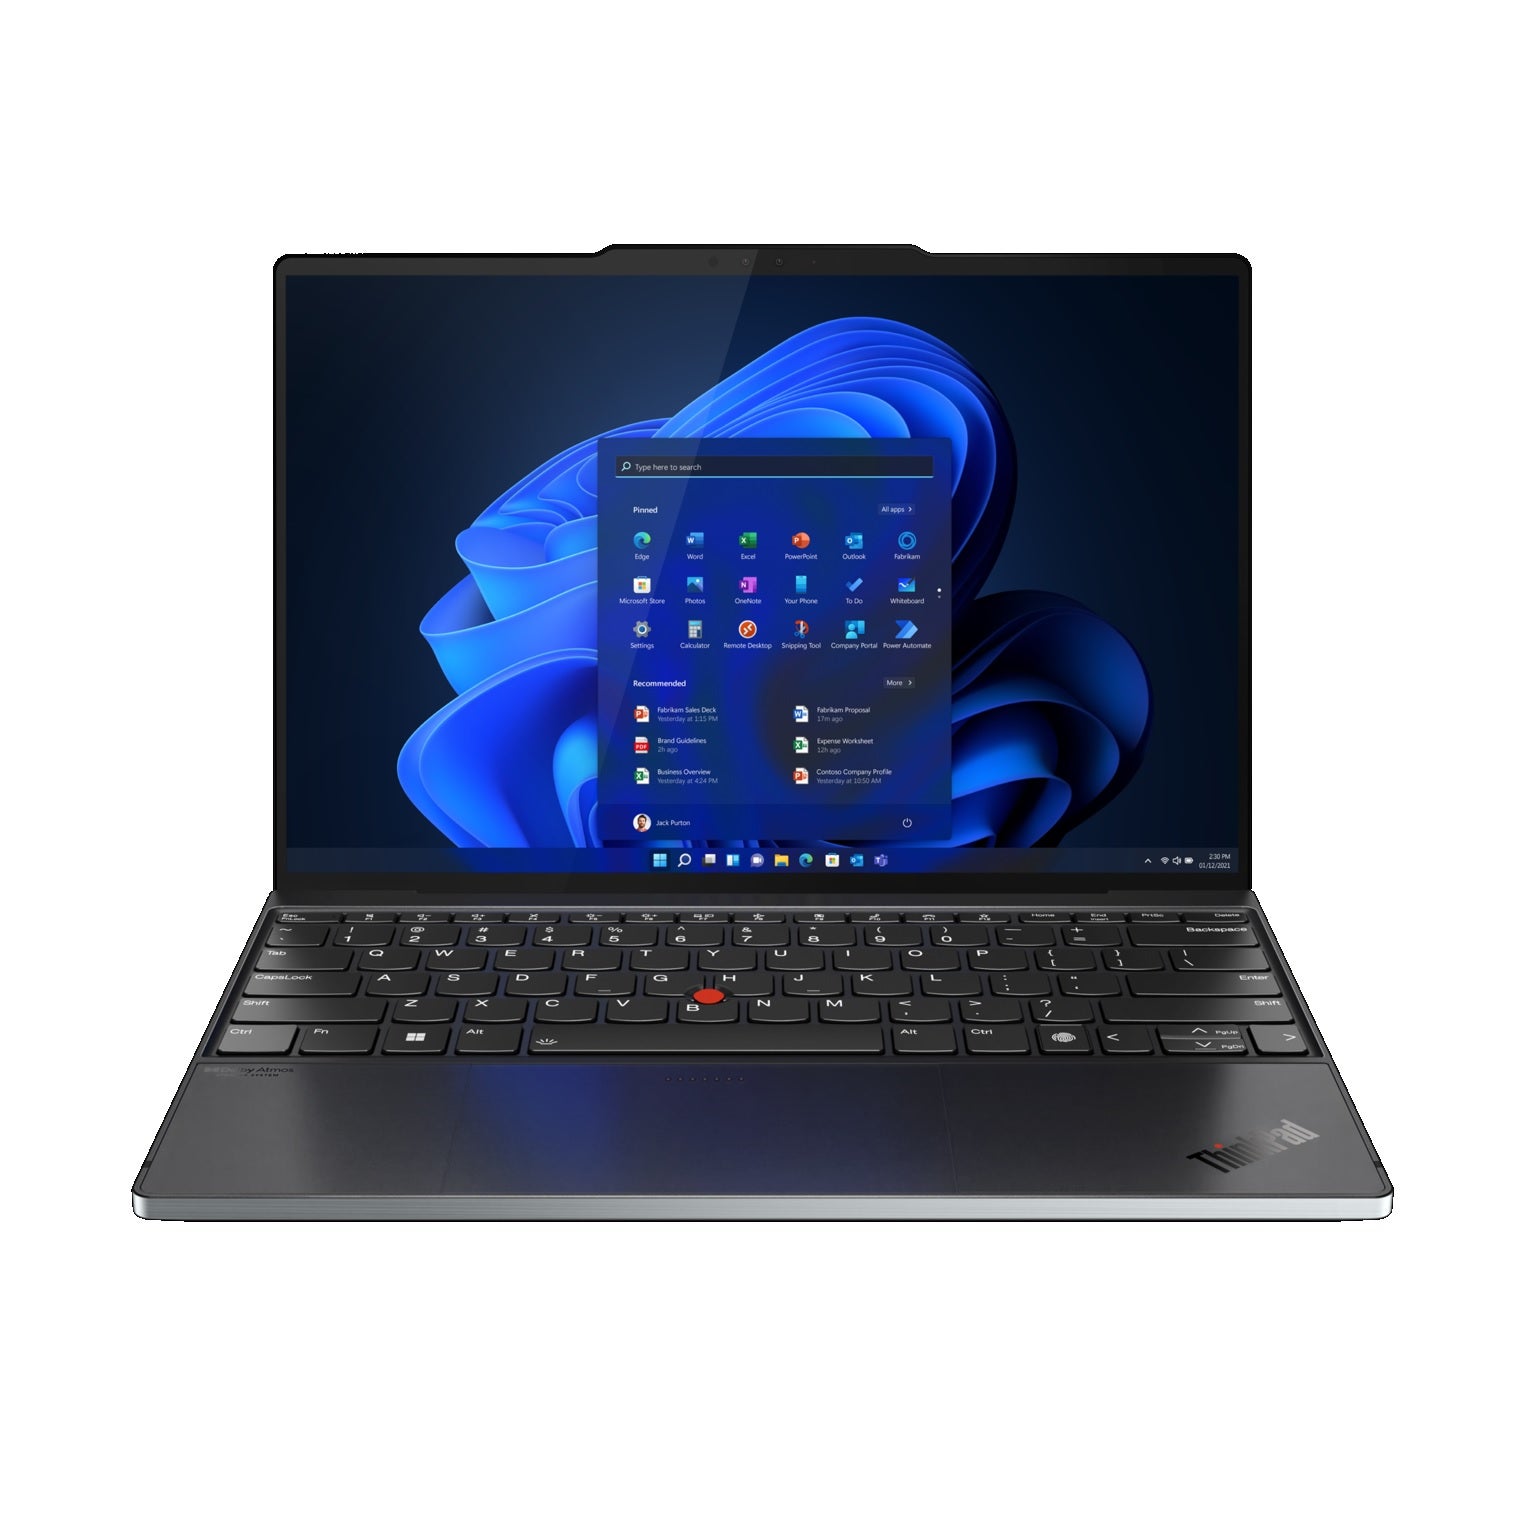 Lenovo ThinkPad Z13 13 inch Laptop